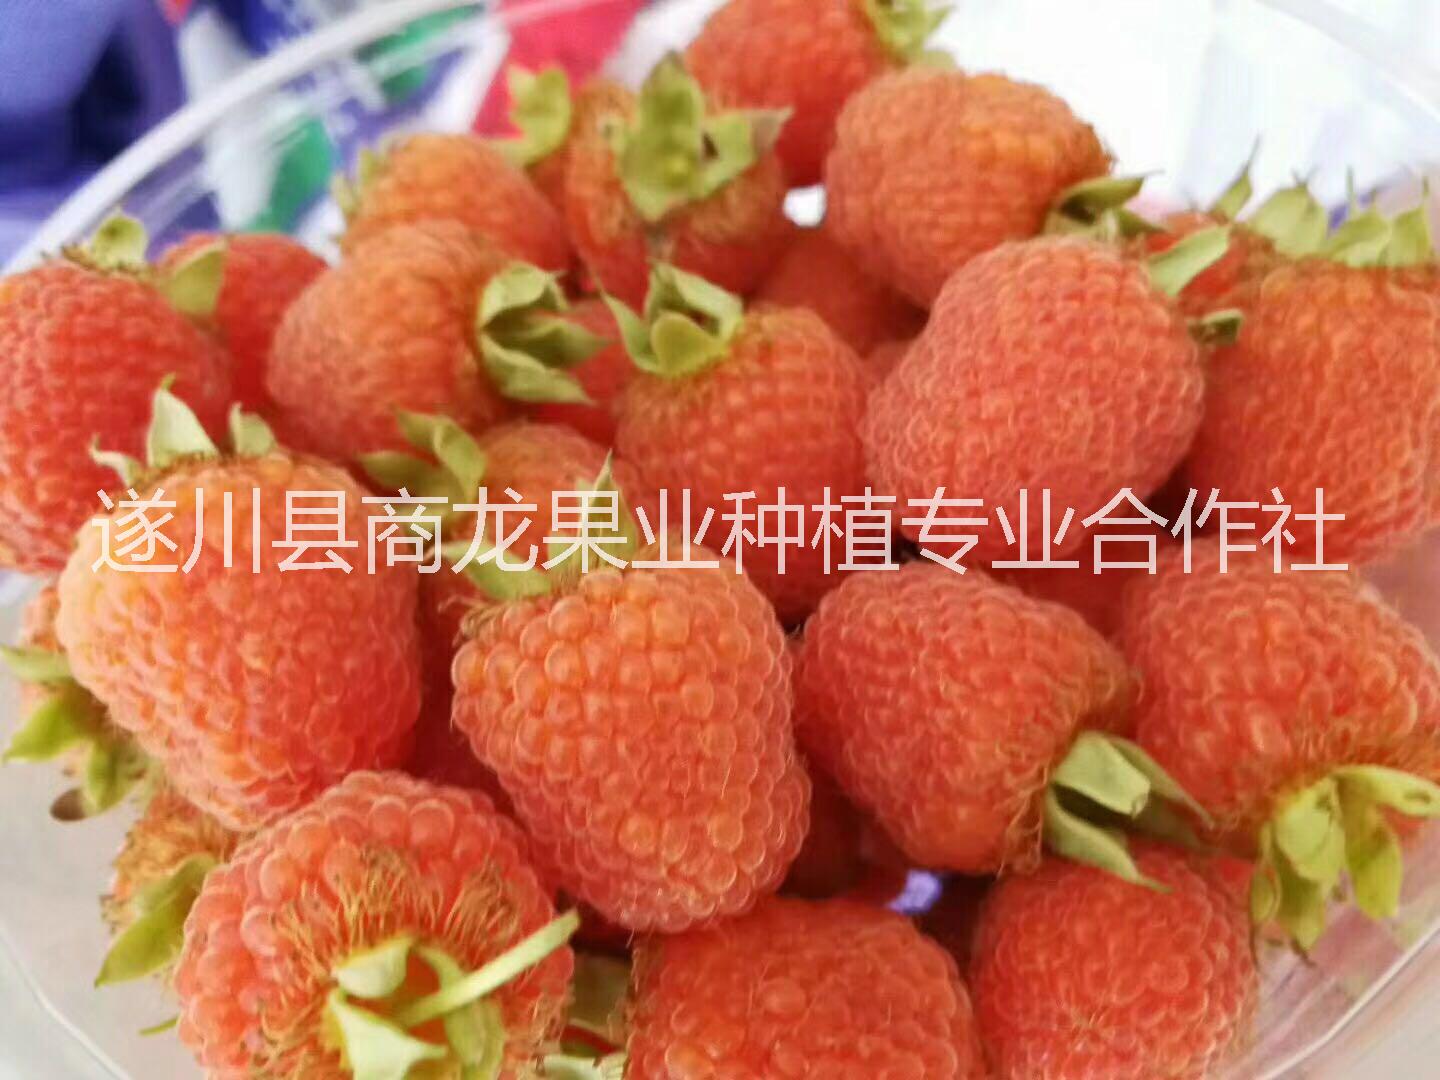 遂川商龙农科供应优质掌叶覆盆子红树莓种苗图片